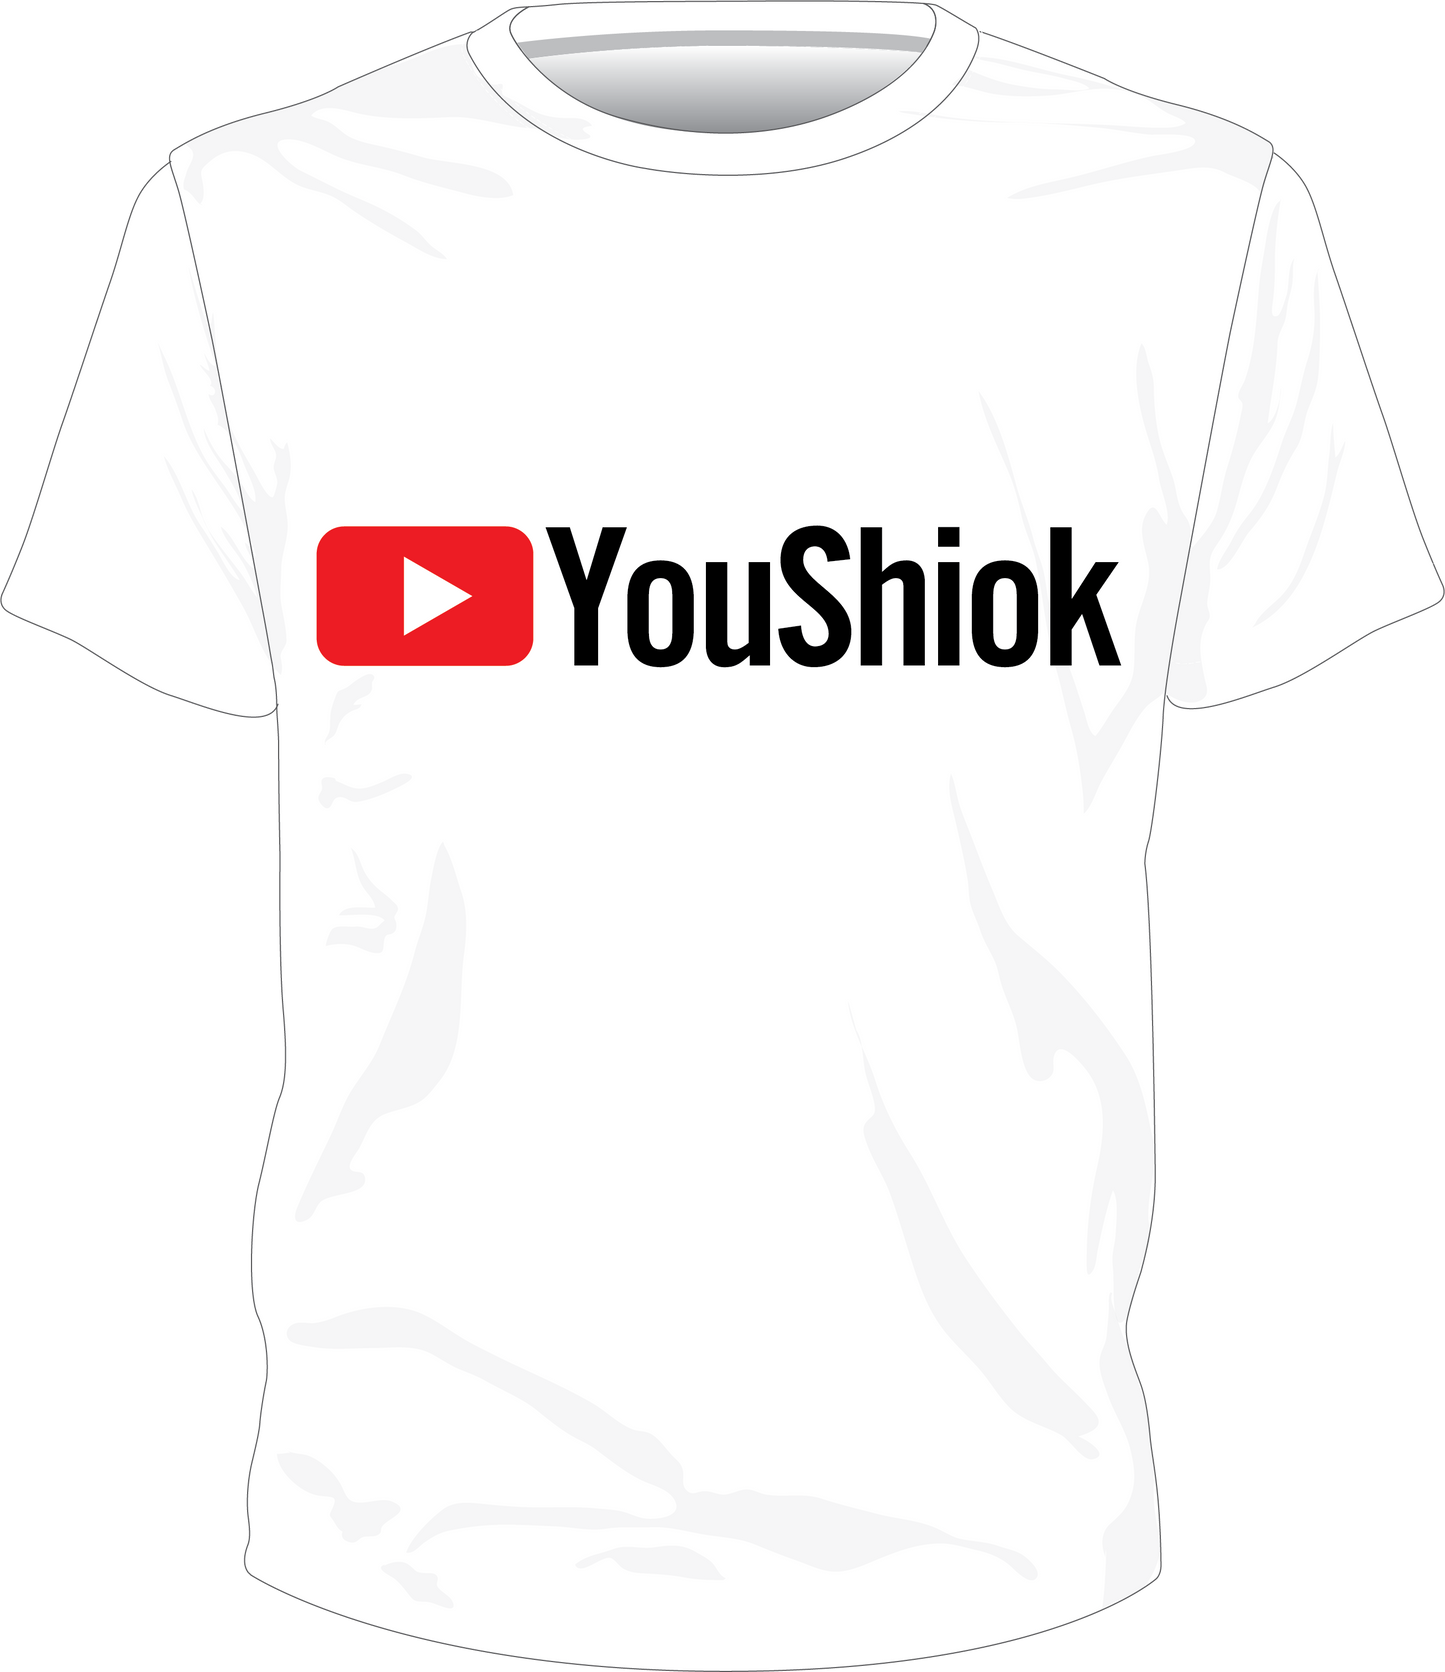 YouShiok